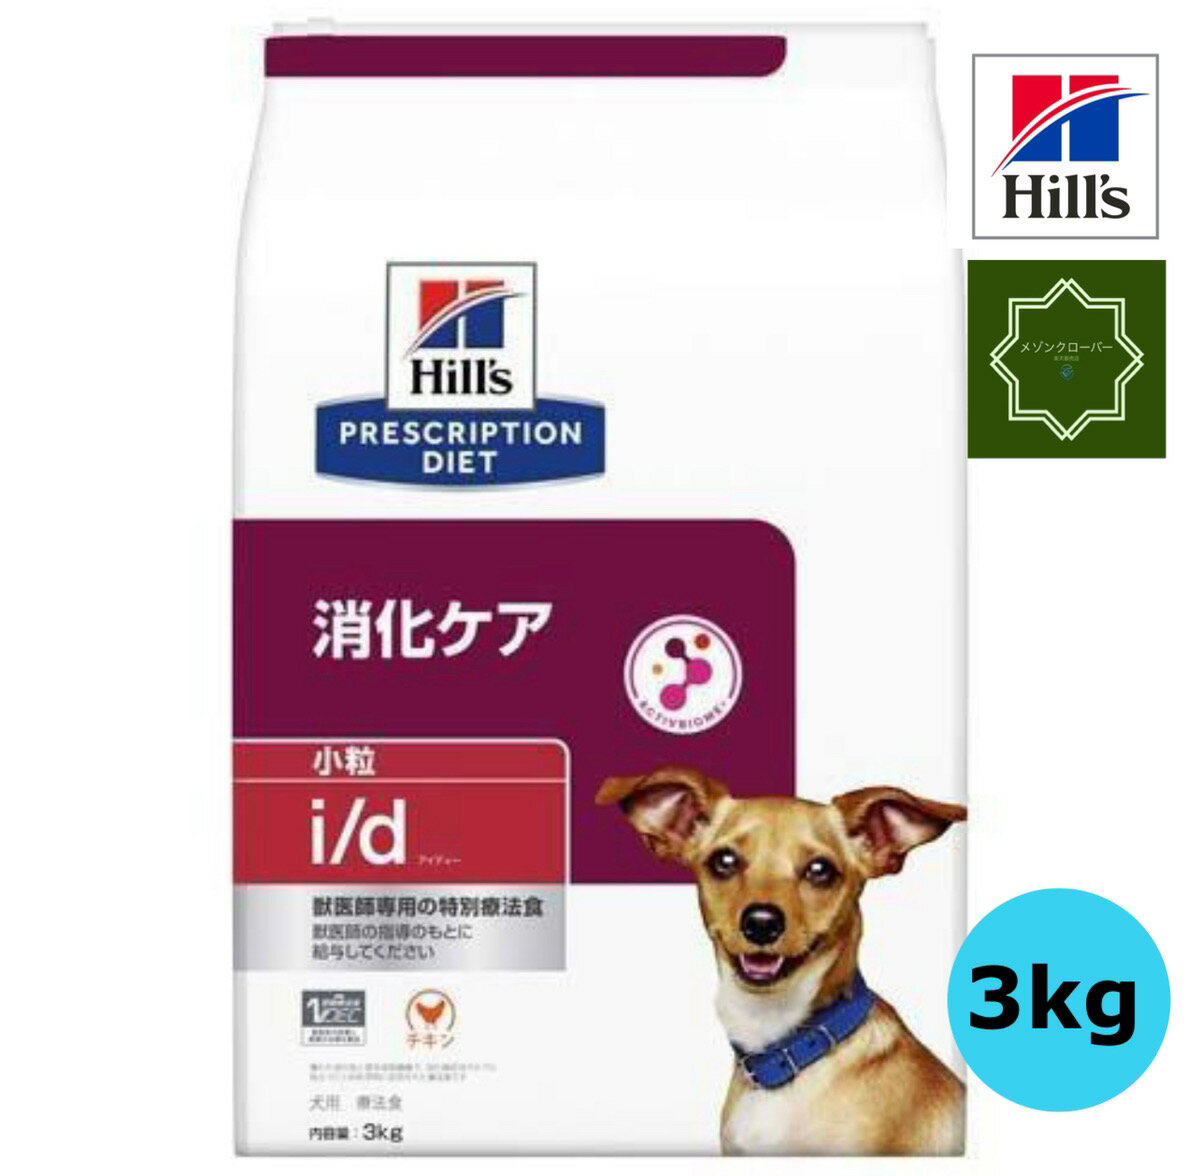 ヒルズ 特別療法食 犬用 i/d アイディー 消化ケア ドライ 小粒 3kg 【送料無料】